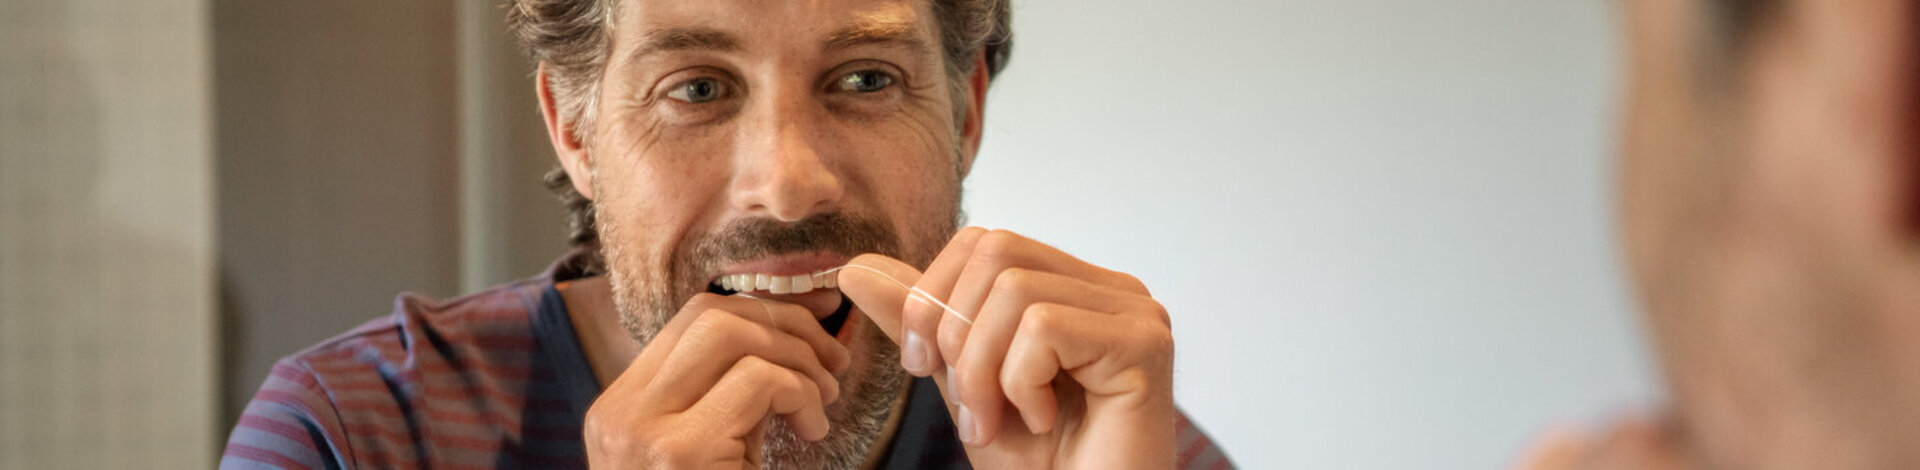 Einem Mann ist die Zahnvorsorge wichtig, er reinigt seine Zahnzwischenräume mit Zahnseide.